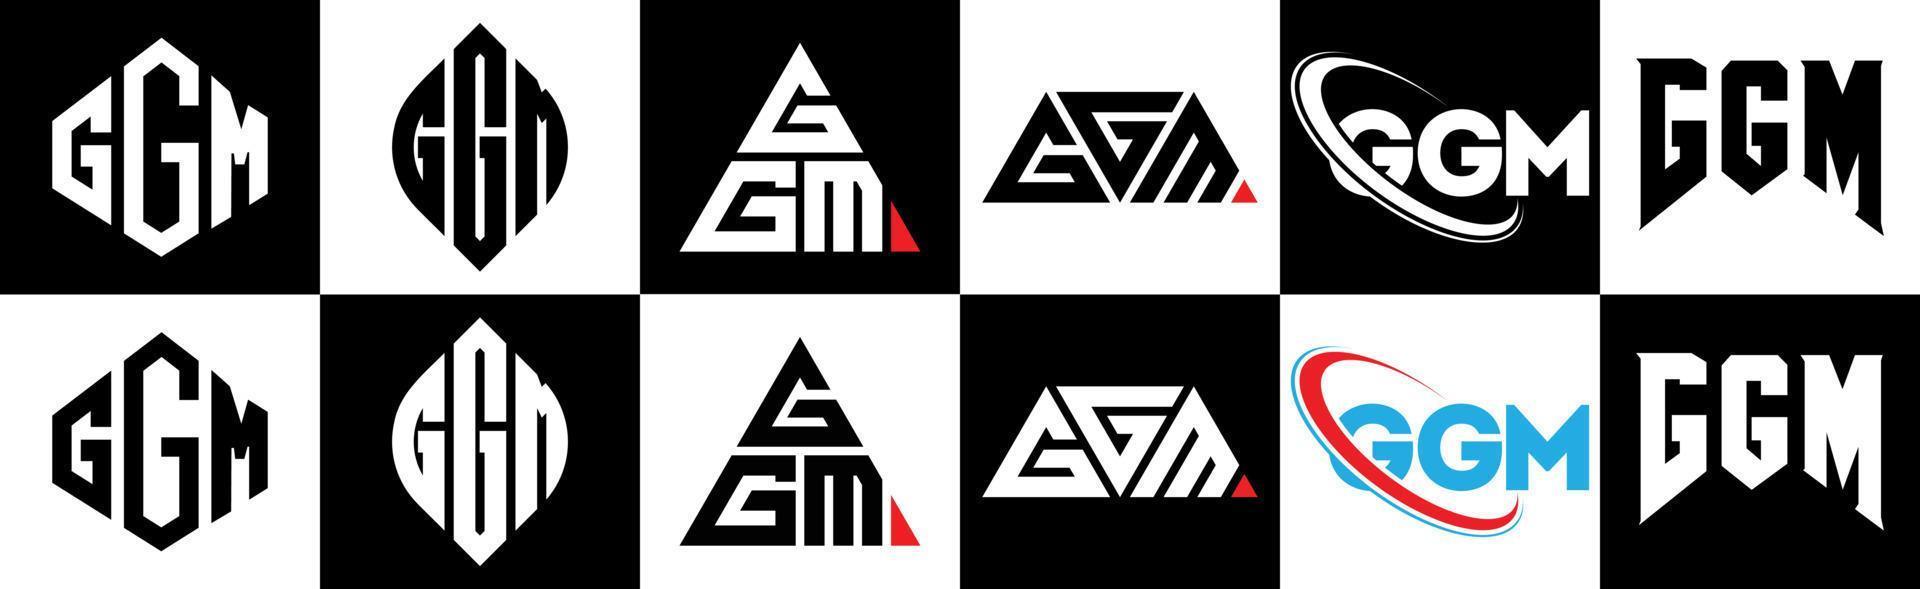 création de logo de lettre ggm en six styles. polygone ggm, cercle, triangle, hexagone, style plat et simple avec logo de lettre de variation de couleur noir et blanc dans un plan de travail. logo minimaliste et classique ggm vecteur